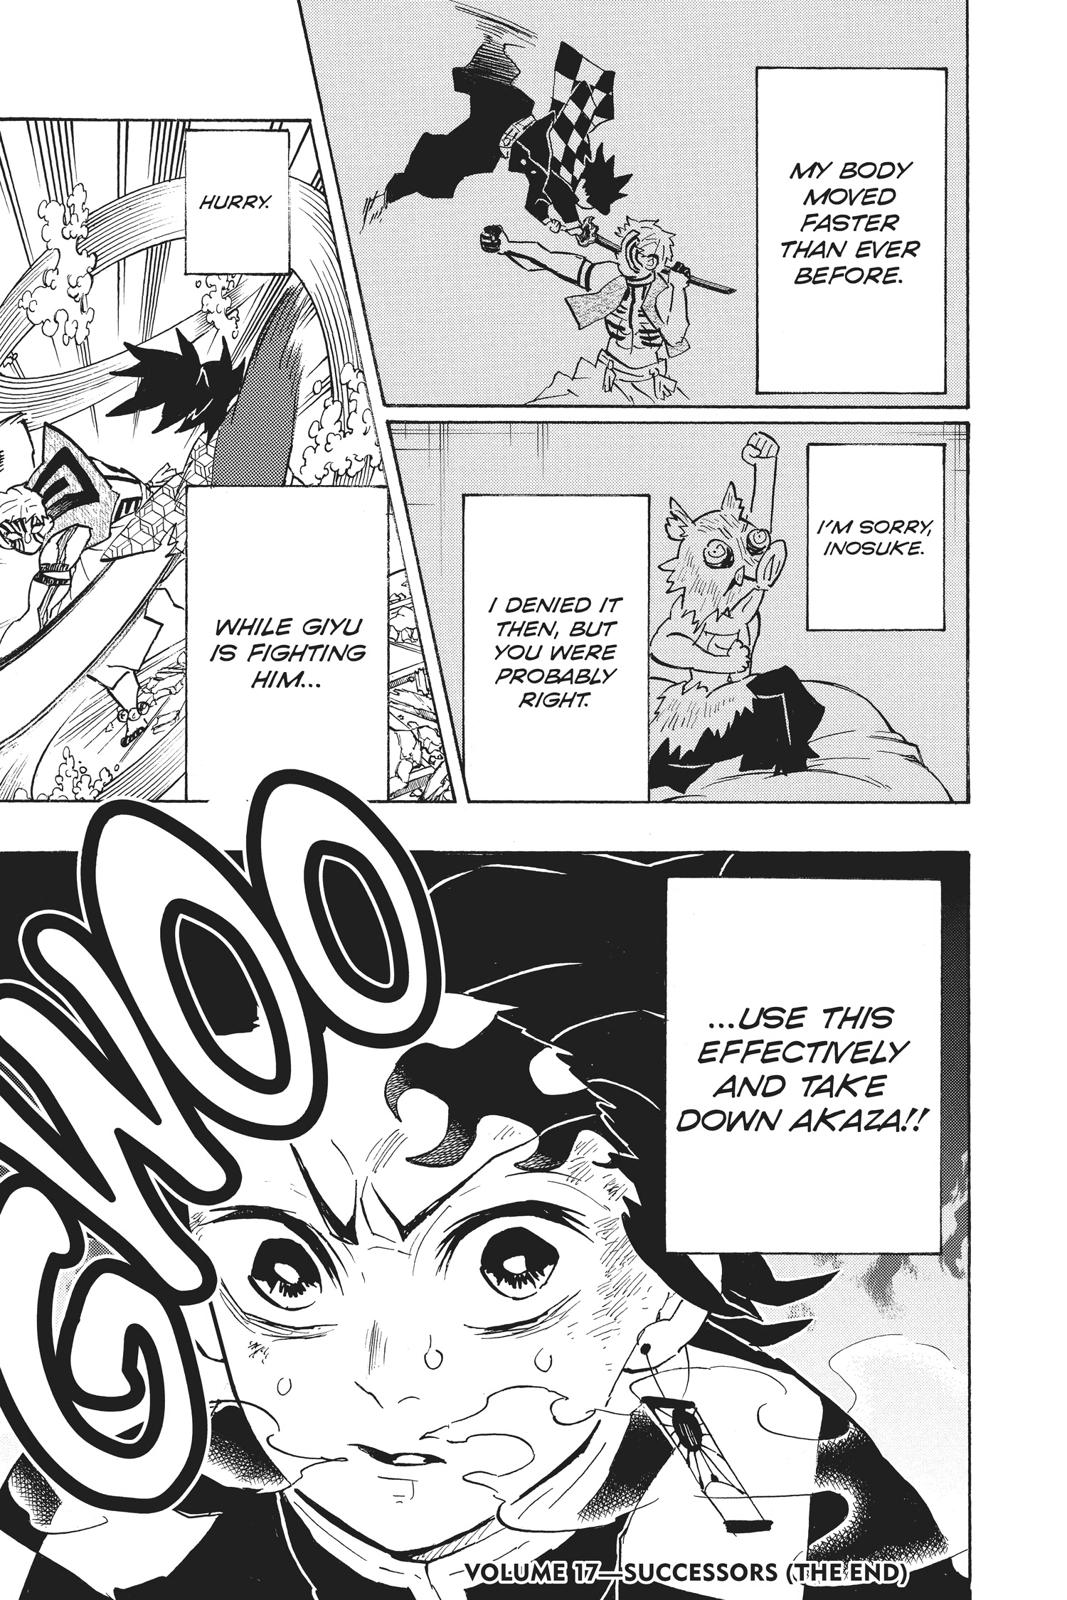 Demon Slayer Manga Manga Chapter - 151 - image 13